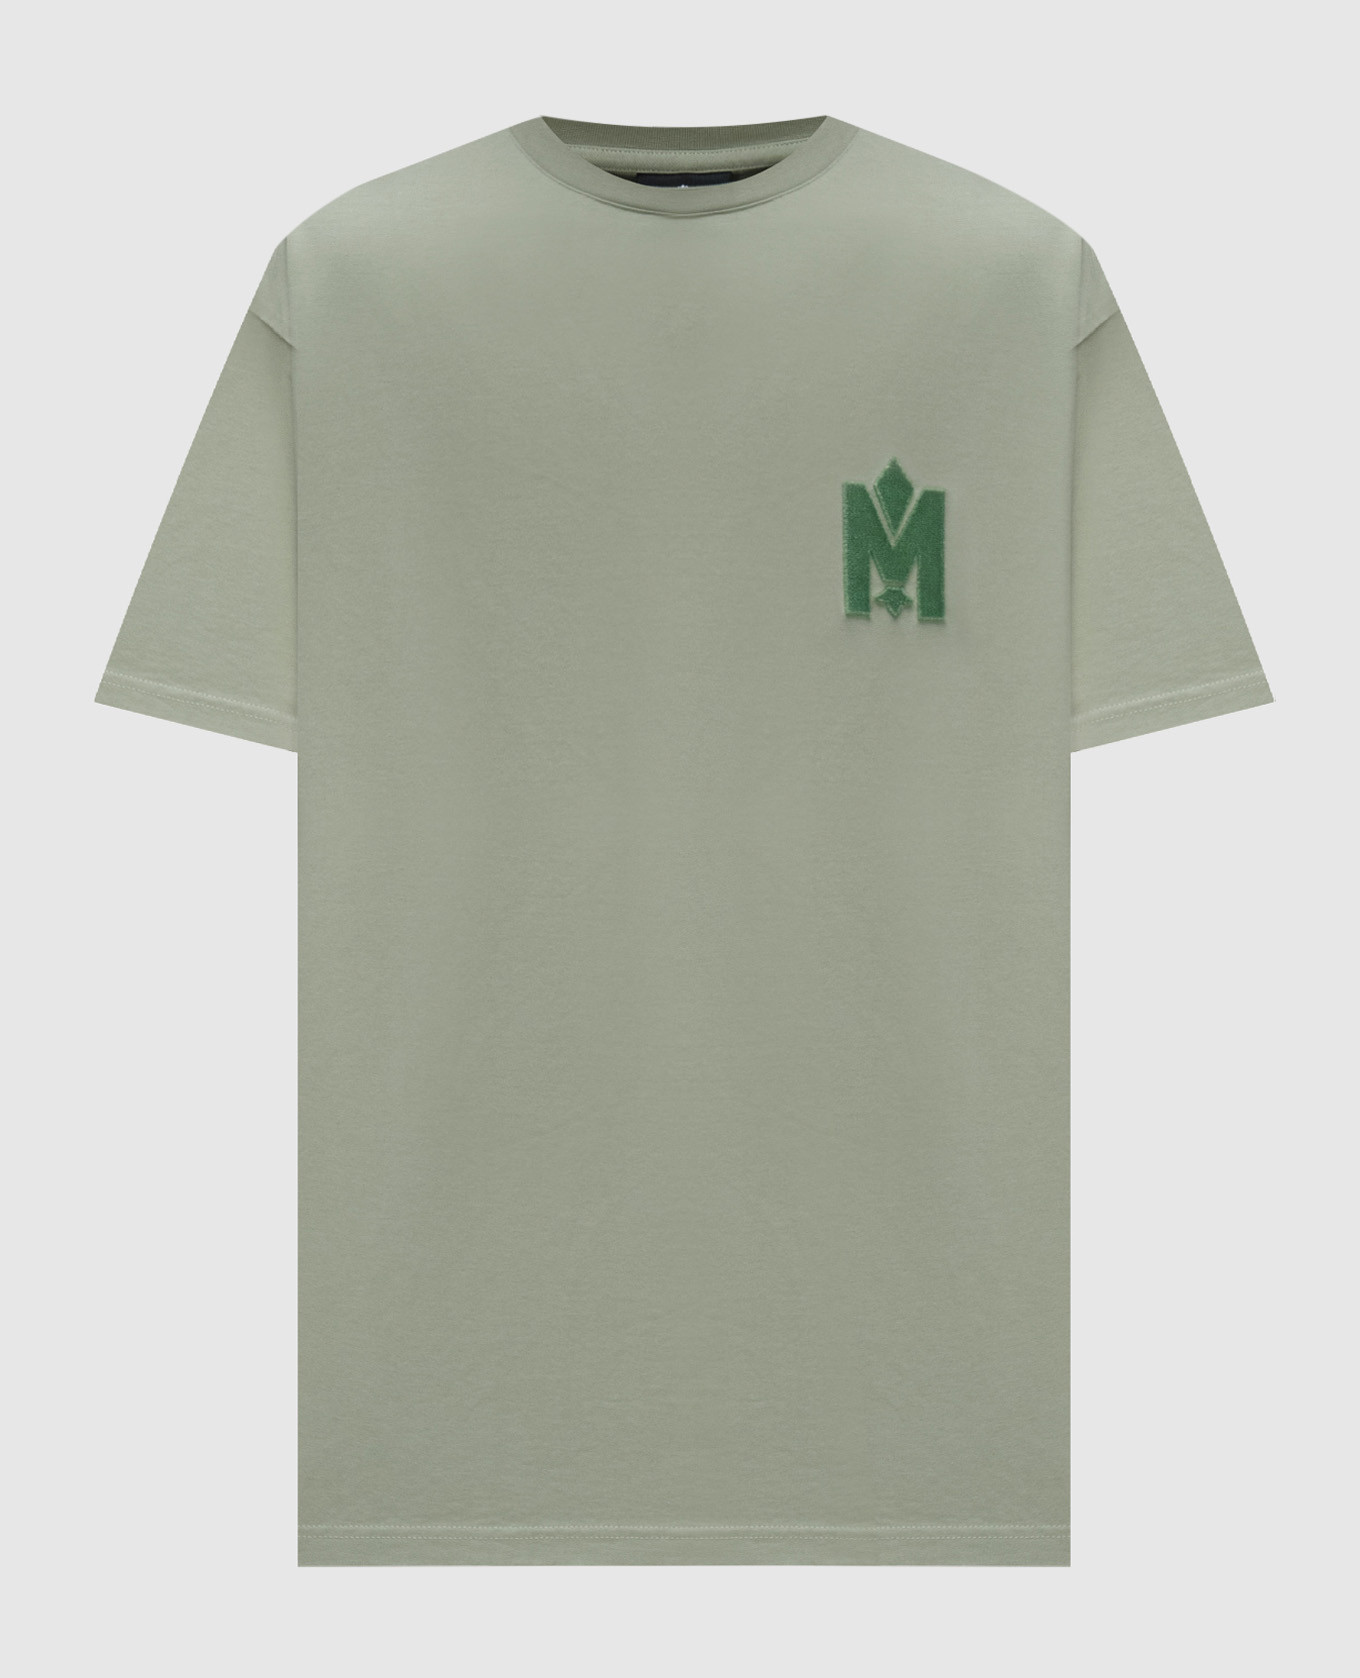 Зеленая футболка с логотипом фактурной эмблемой